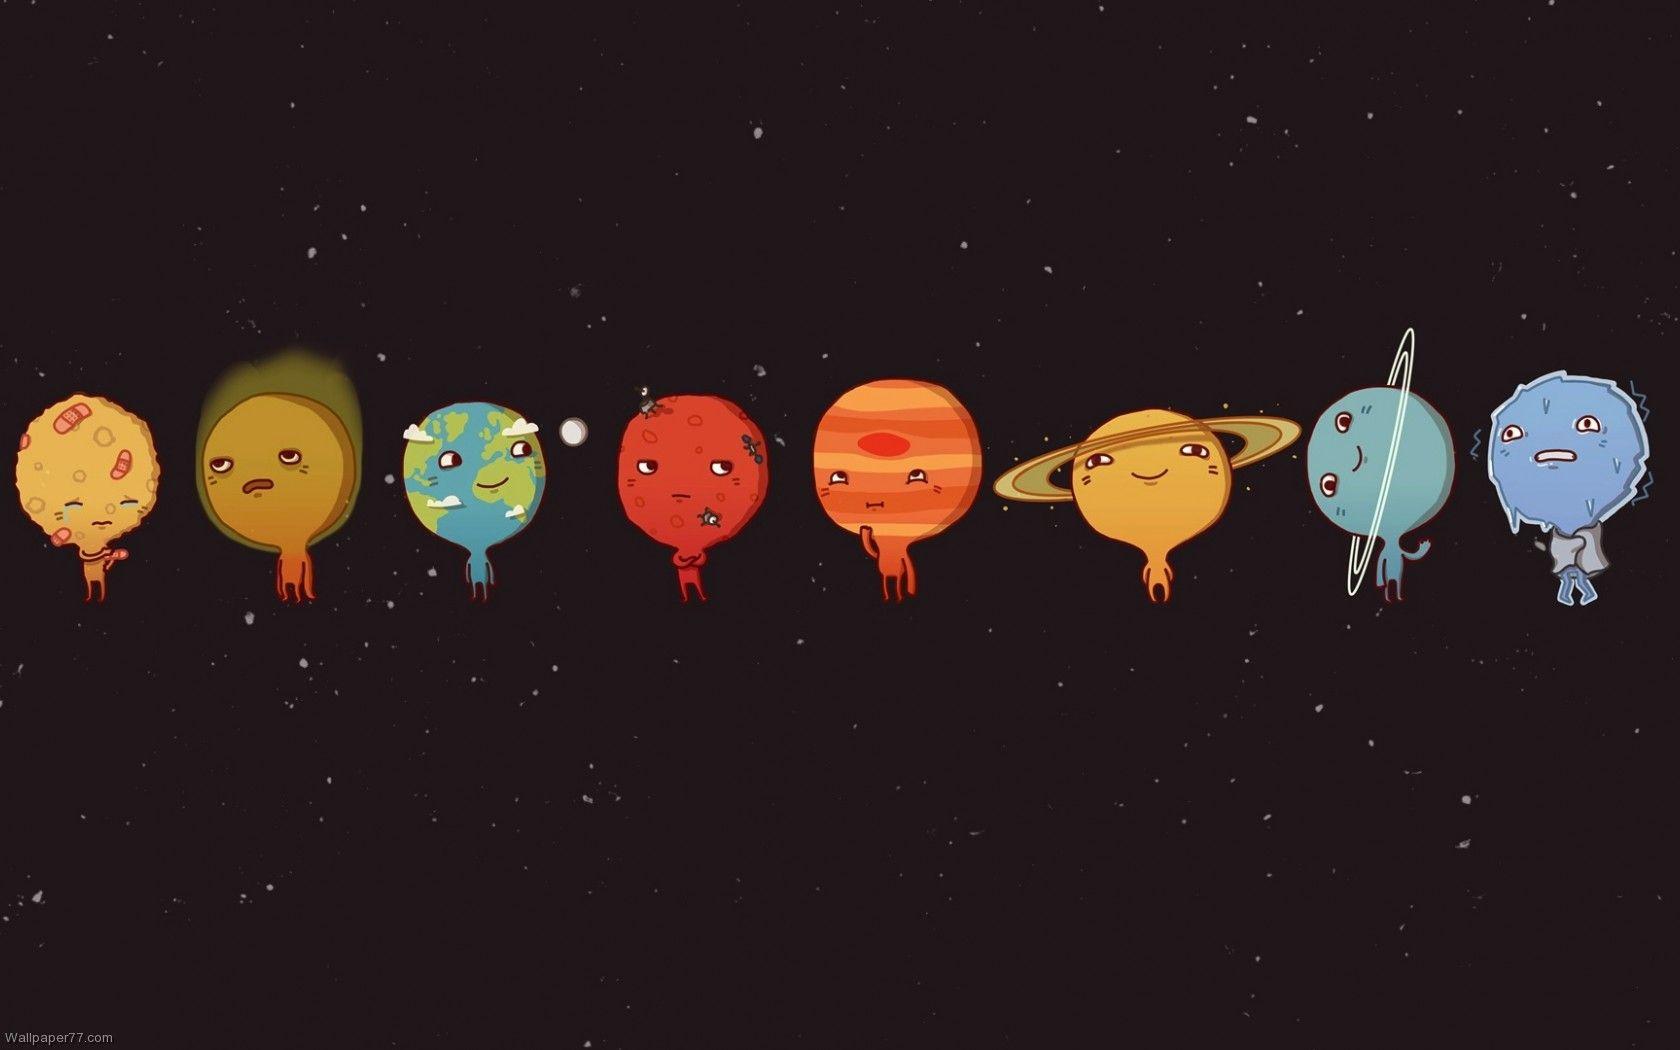 solar system, 1680x1050 pixels, Wallpaper tagged Cute, Fun